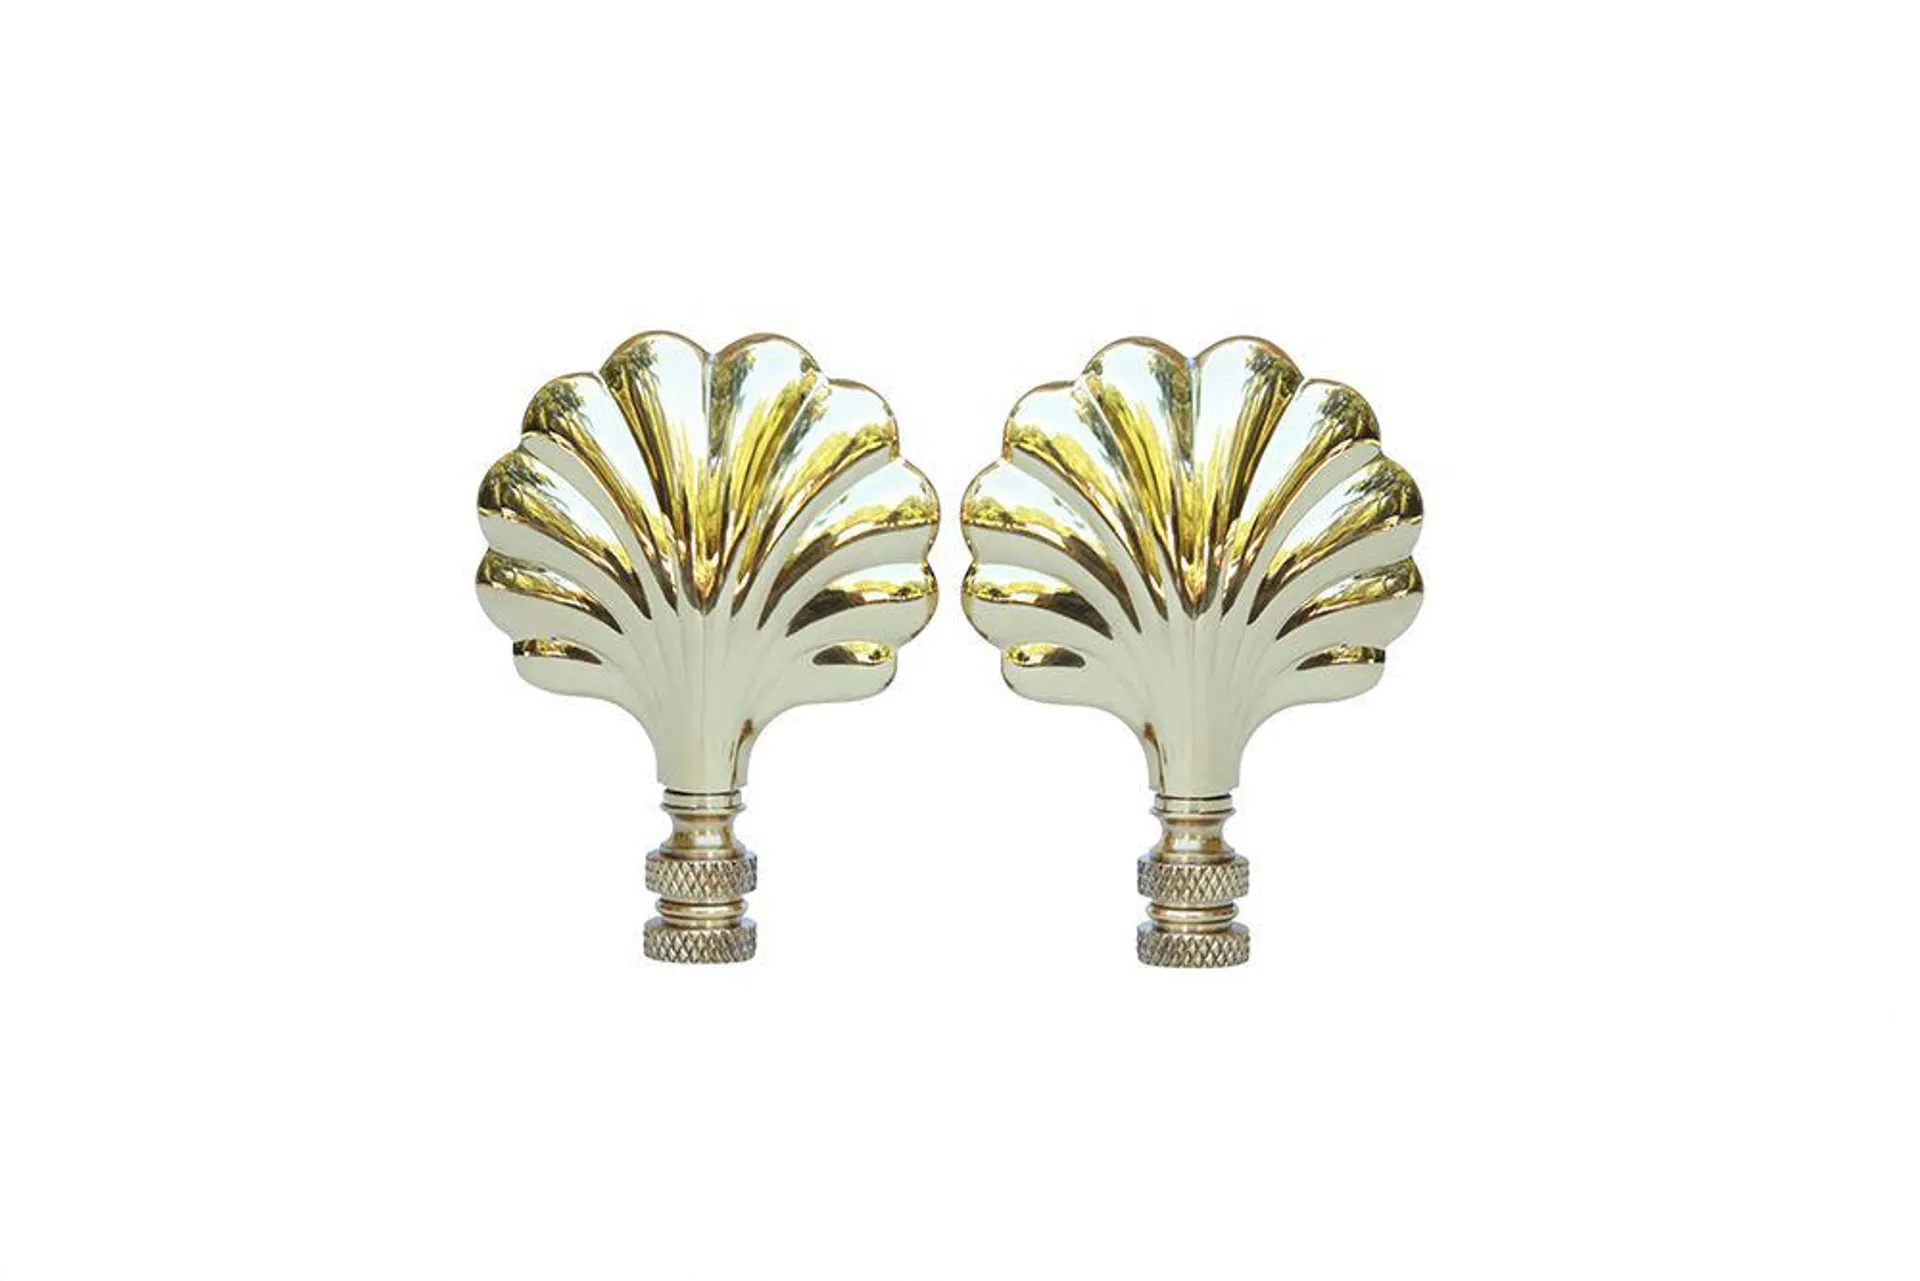 Brass Shell Lamp Finials - a Pair